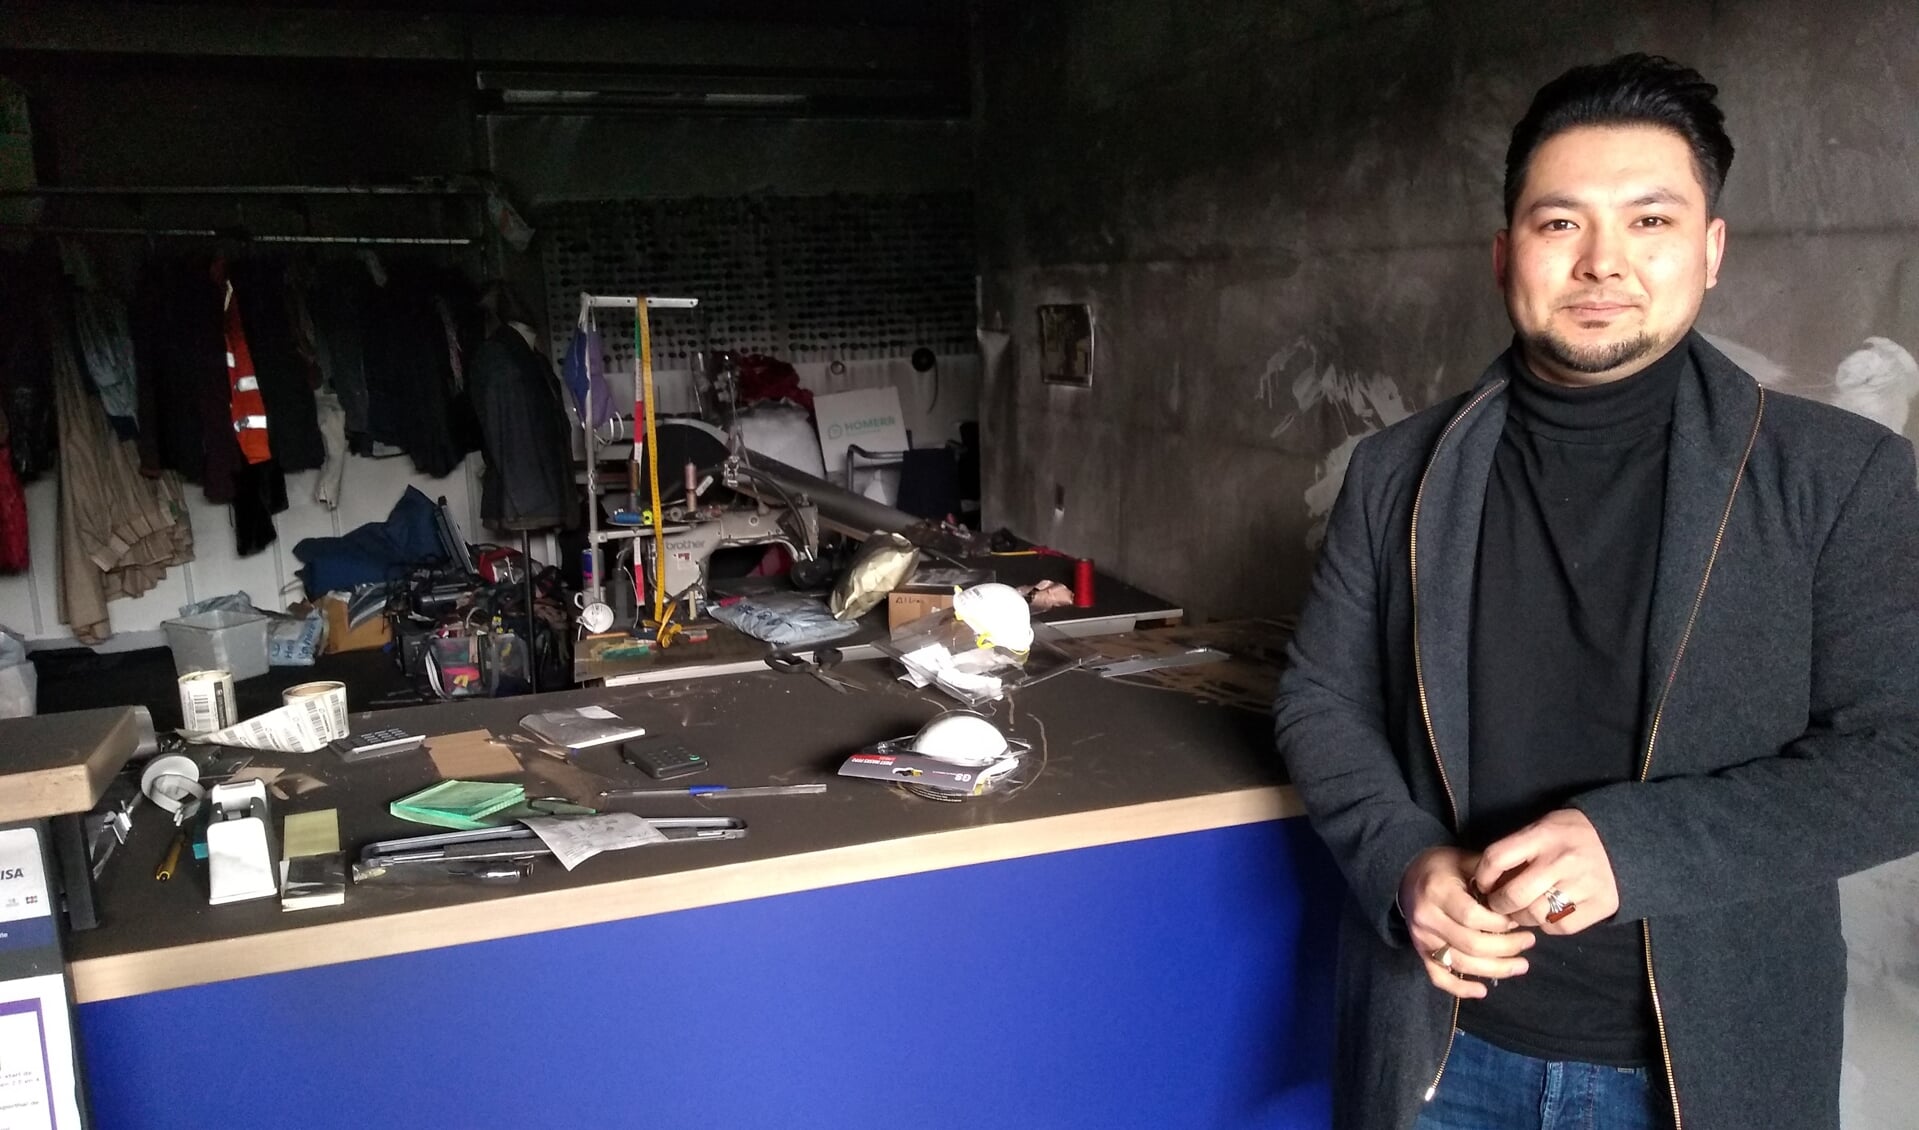 Mustafa Jafari is aan de ene kant in shock door de gebeurtenissen, aan de andere kant is hij vastbesloten zijn winkel opnieuw op te bouwen.